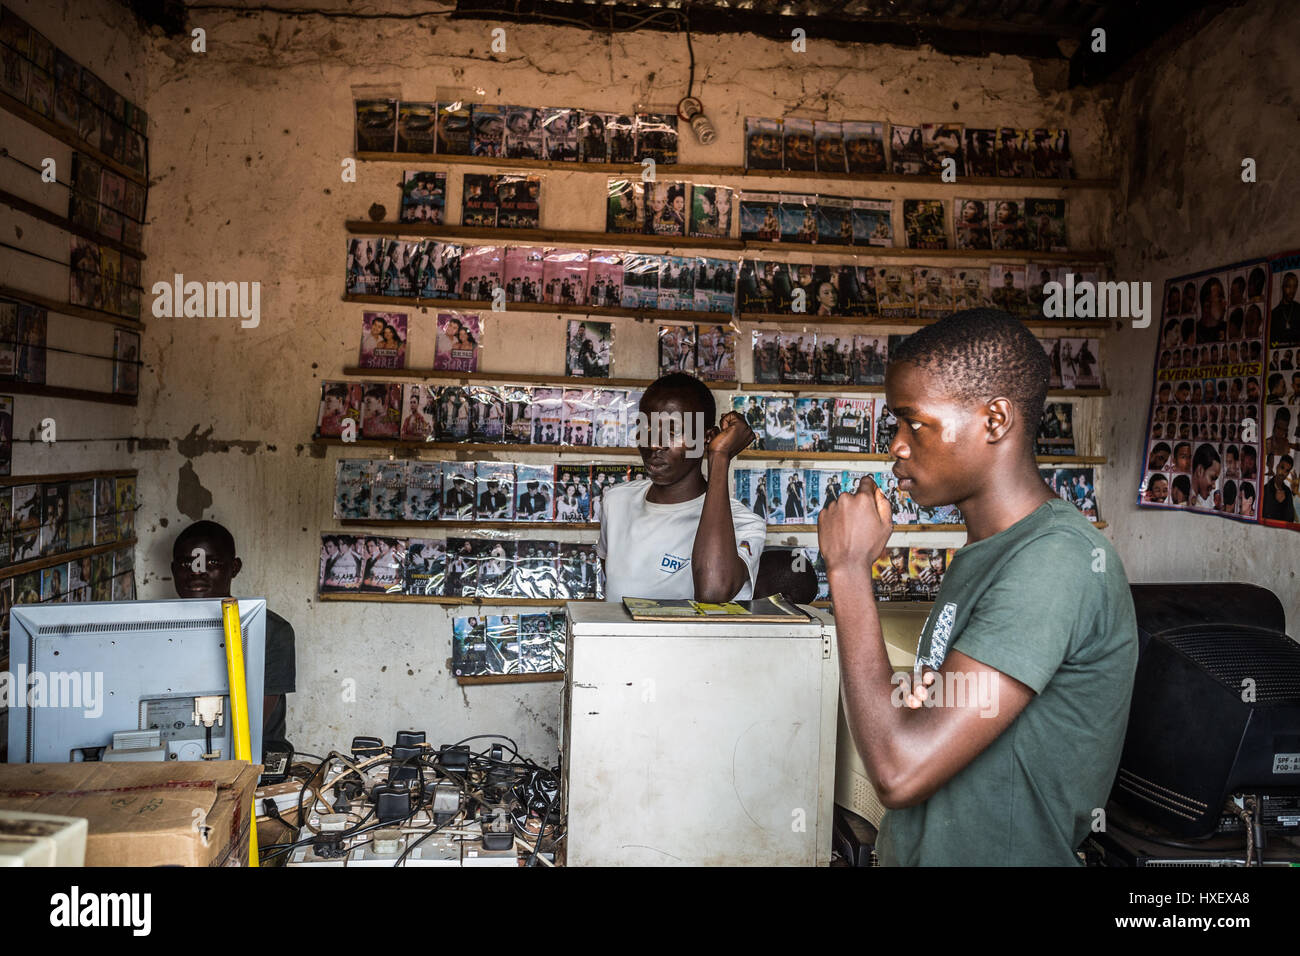 Tienda de DVD local en zonas rurales de Uganda Foto de stock